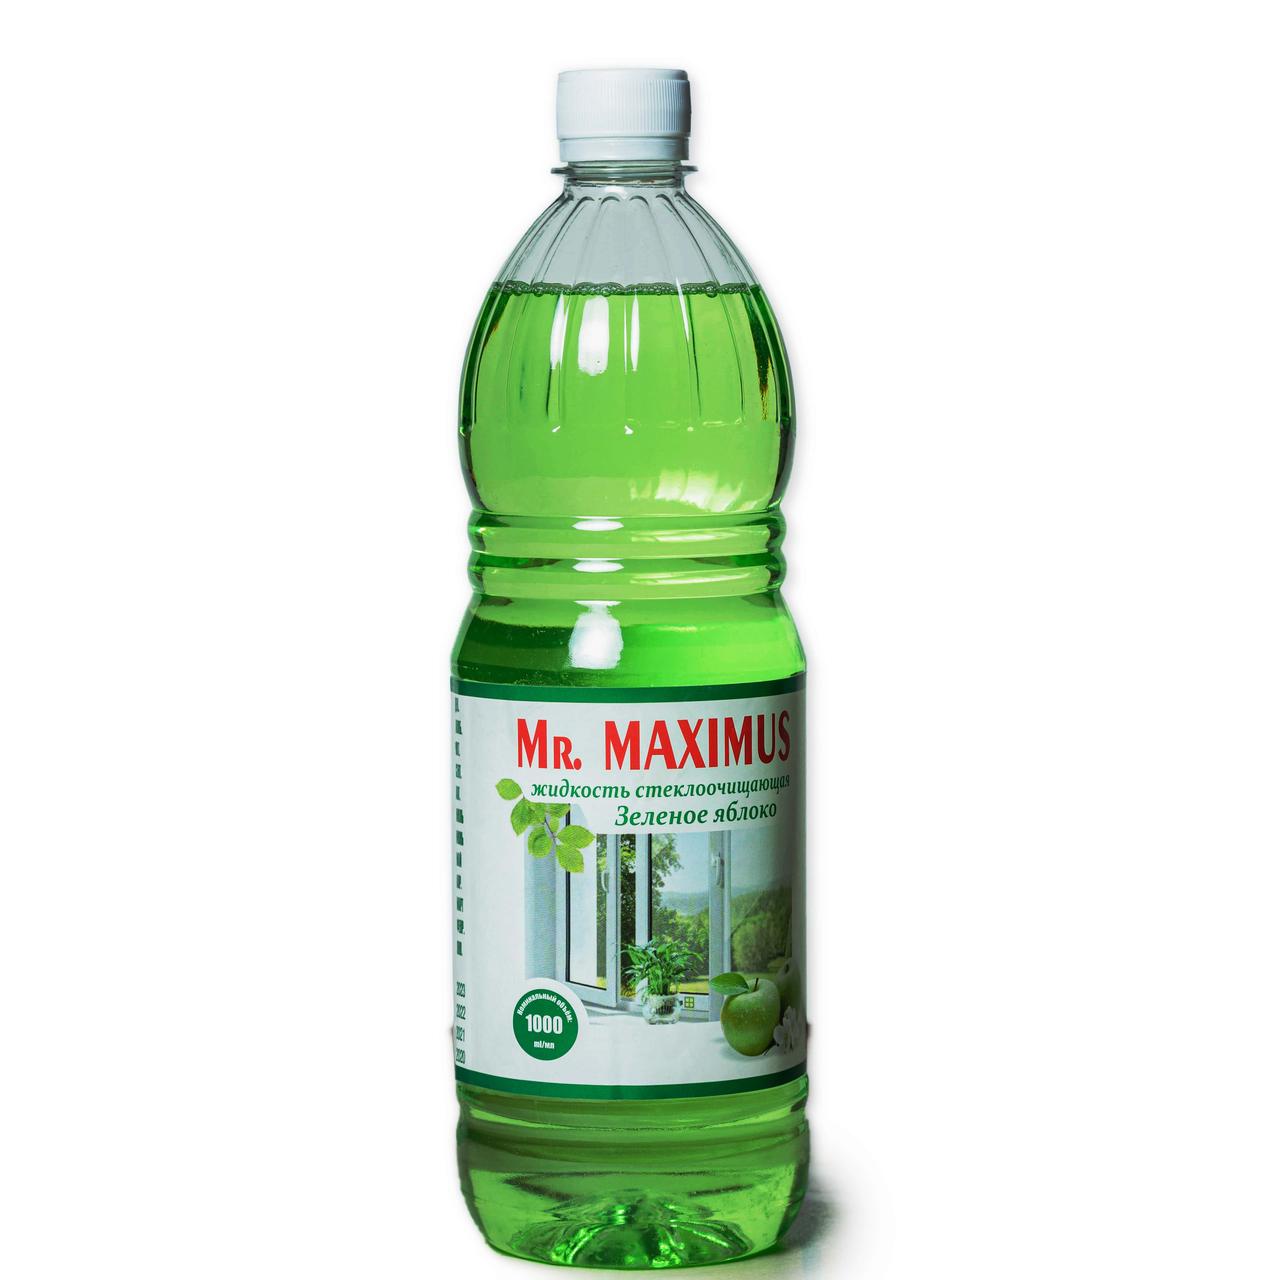 Жидкость стеклоочищающая "Mr. MAXIMUS зелёное яблоко", 1000 мл